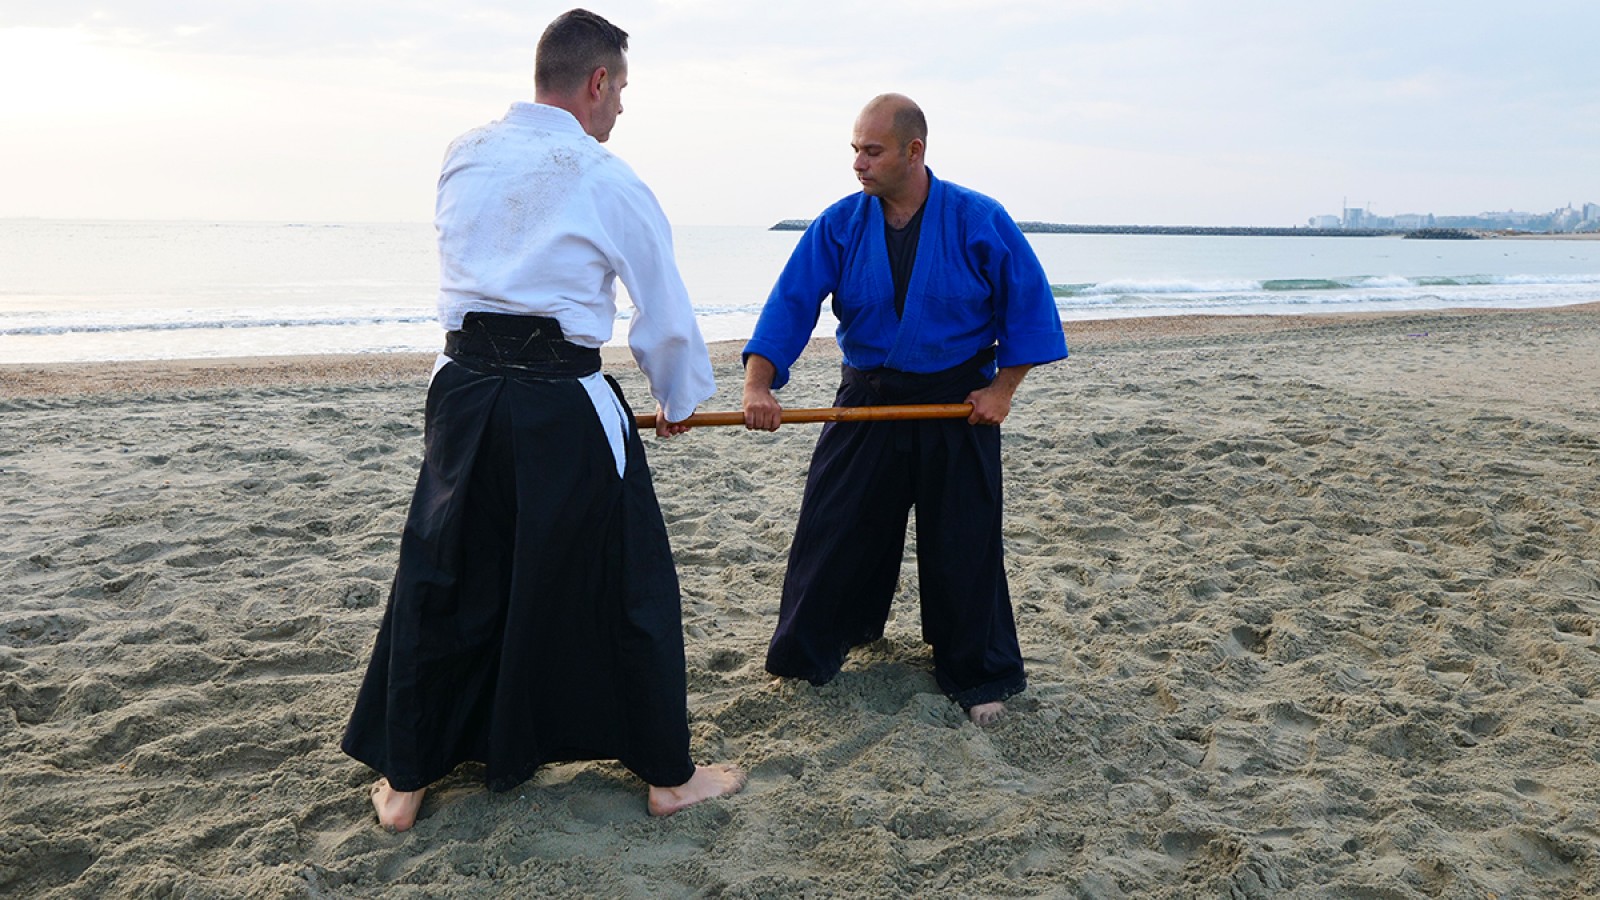 Lectii autoaparare si arte martiale cu Sensei Dan Mancas